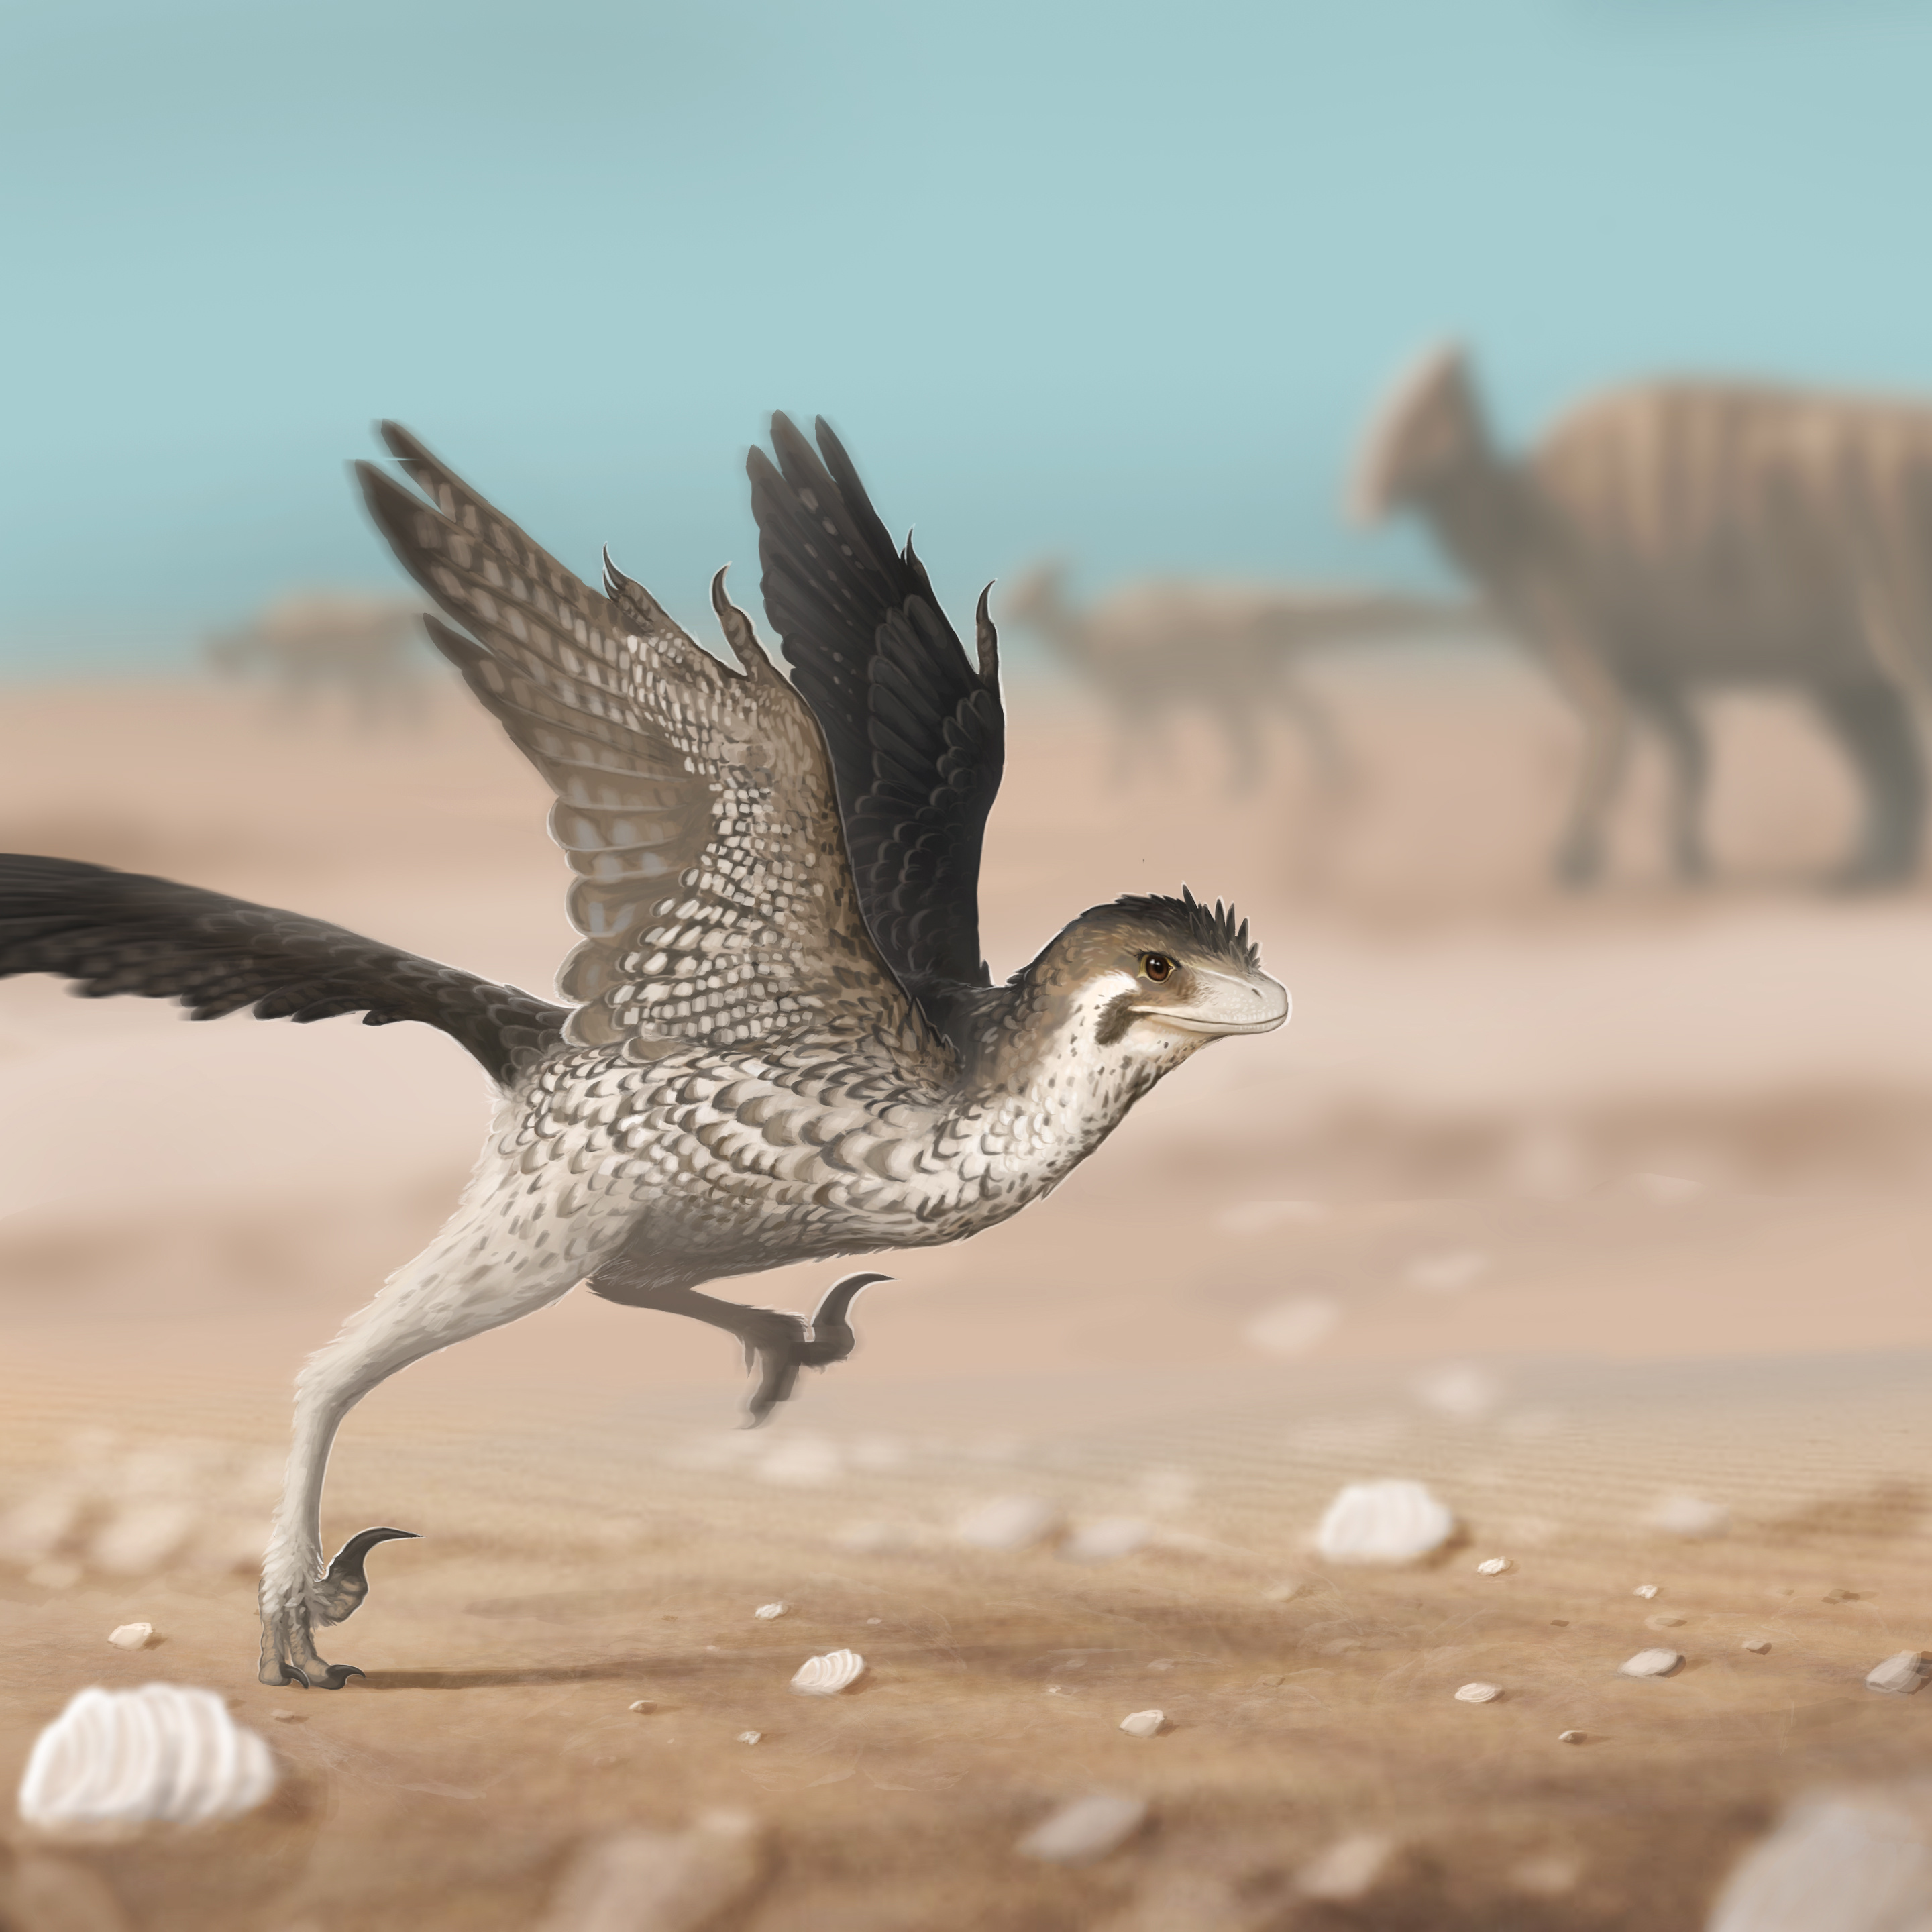 De nombreux dinosaures étaient recouverts de plumes, en particulier les dinosaures théropodes. C'est parmi ce groupe qu'apparaissent les ailes des oiseaux. © Ruben, Adobe Stock